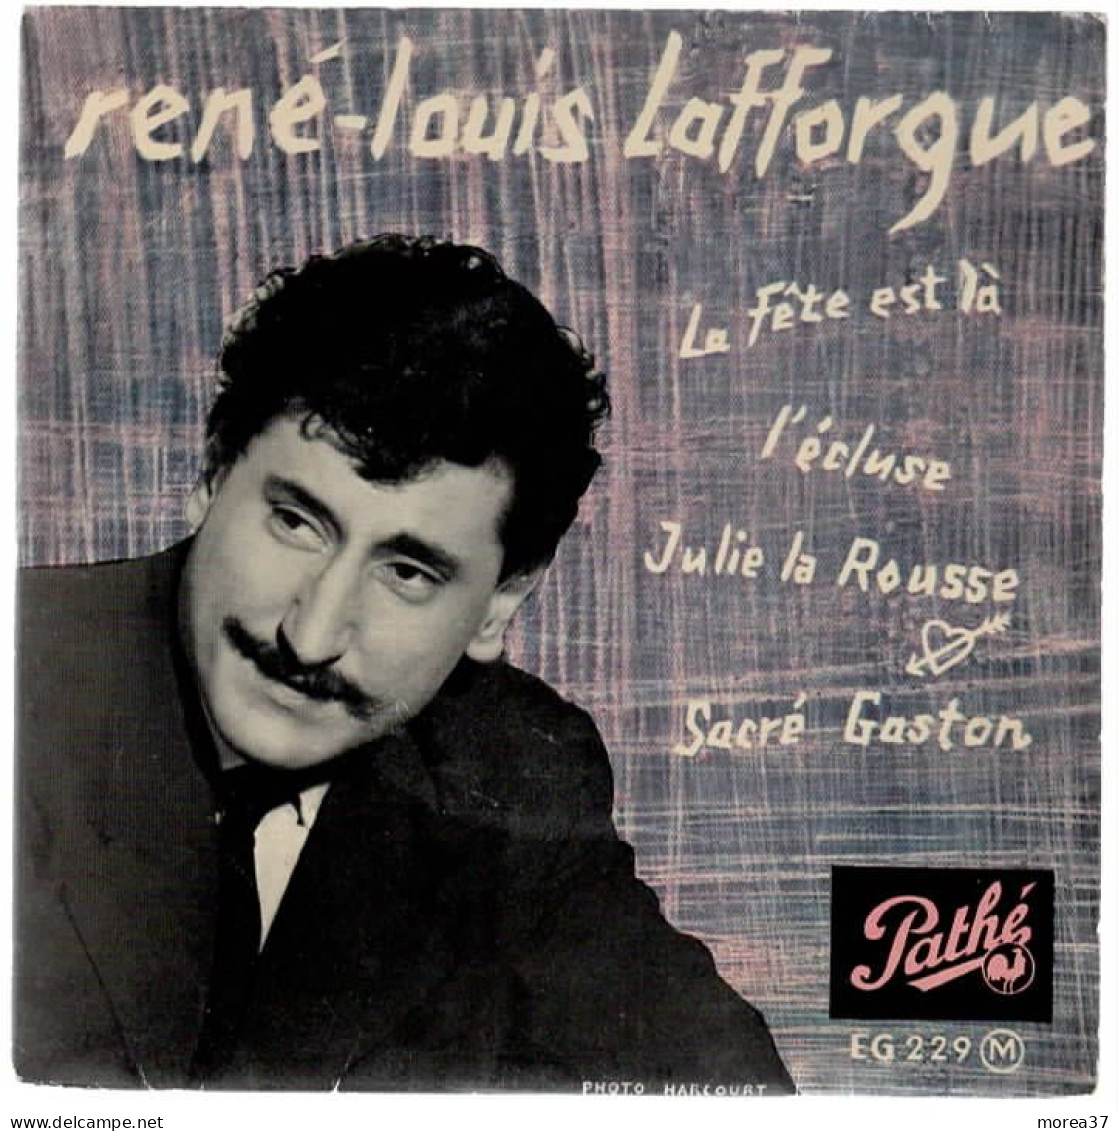 RENE LOUIS LAFFORGUE   La Fête Est La    PATHE EG 229 M - Sonstige - Franz. Chansons